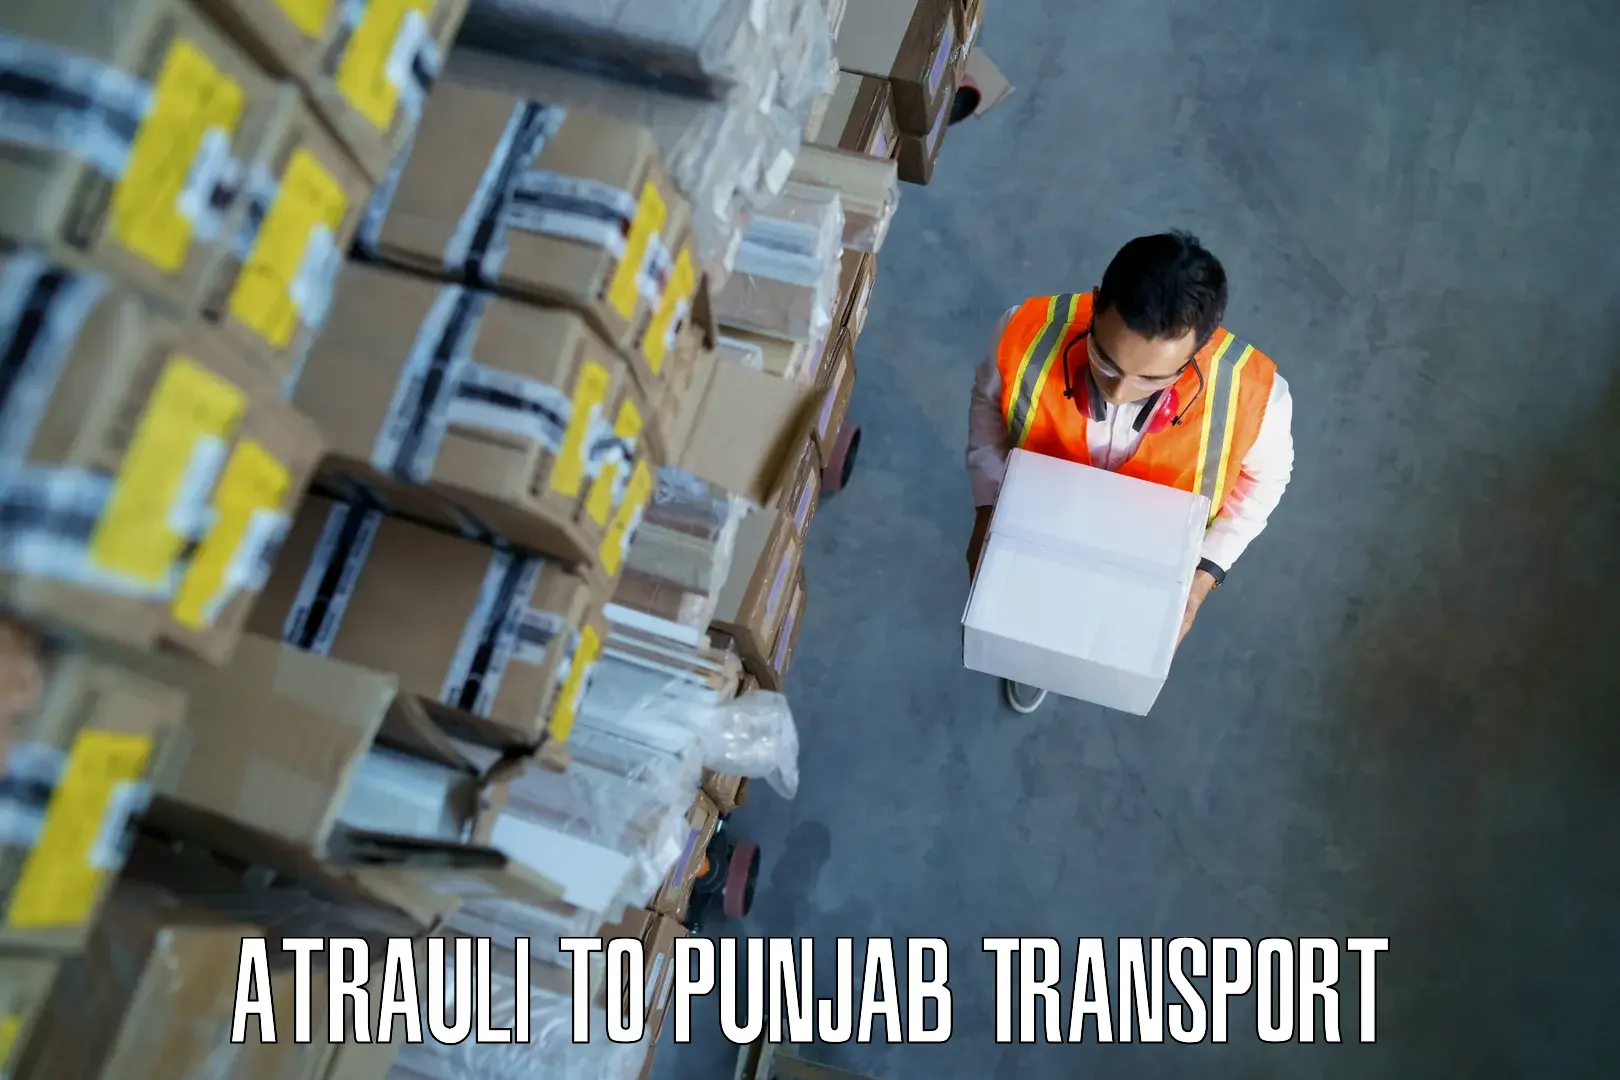 Transport in sharing Atrauli to Mandi Gobindgarh